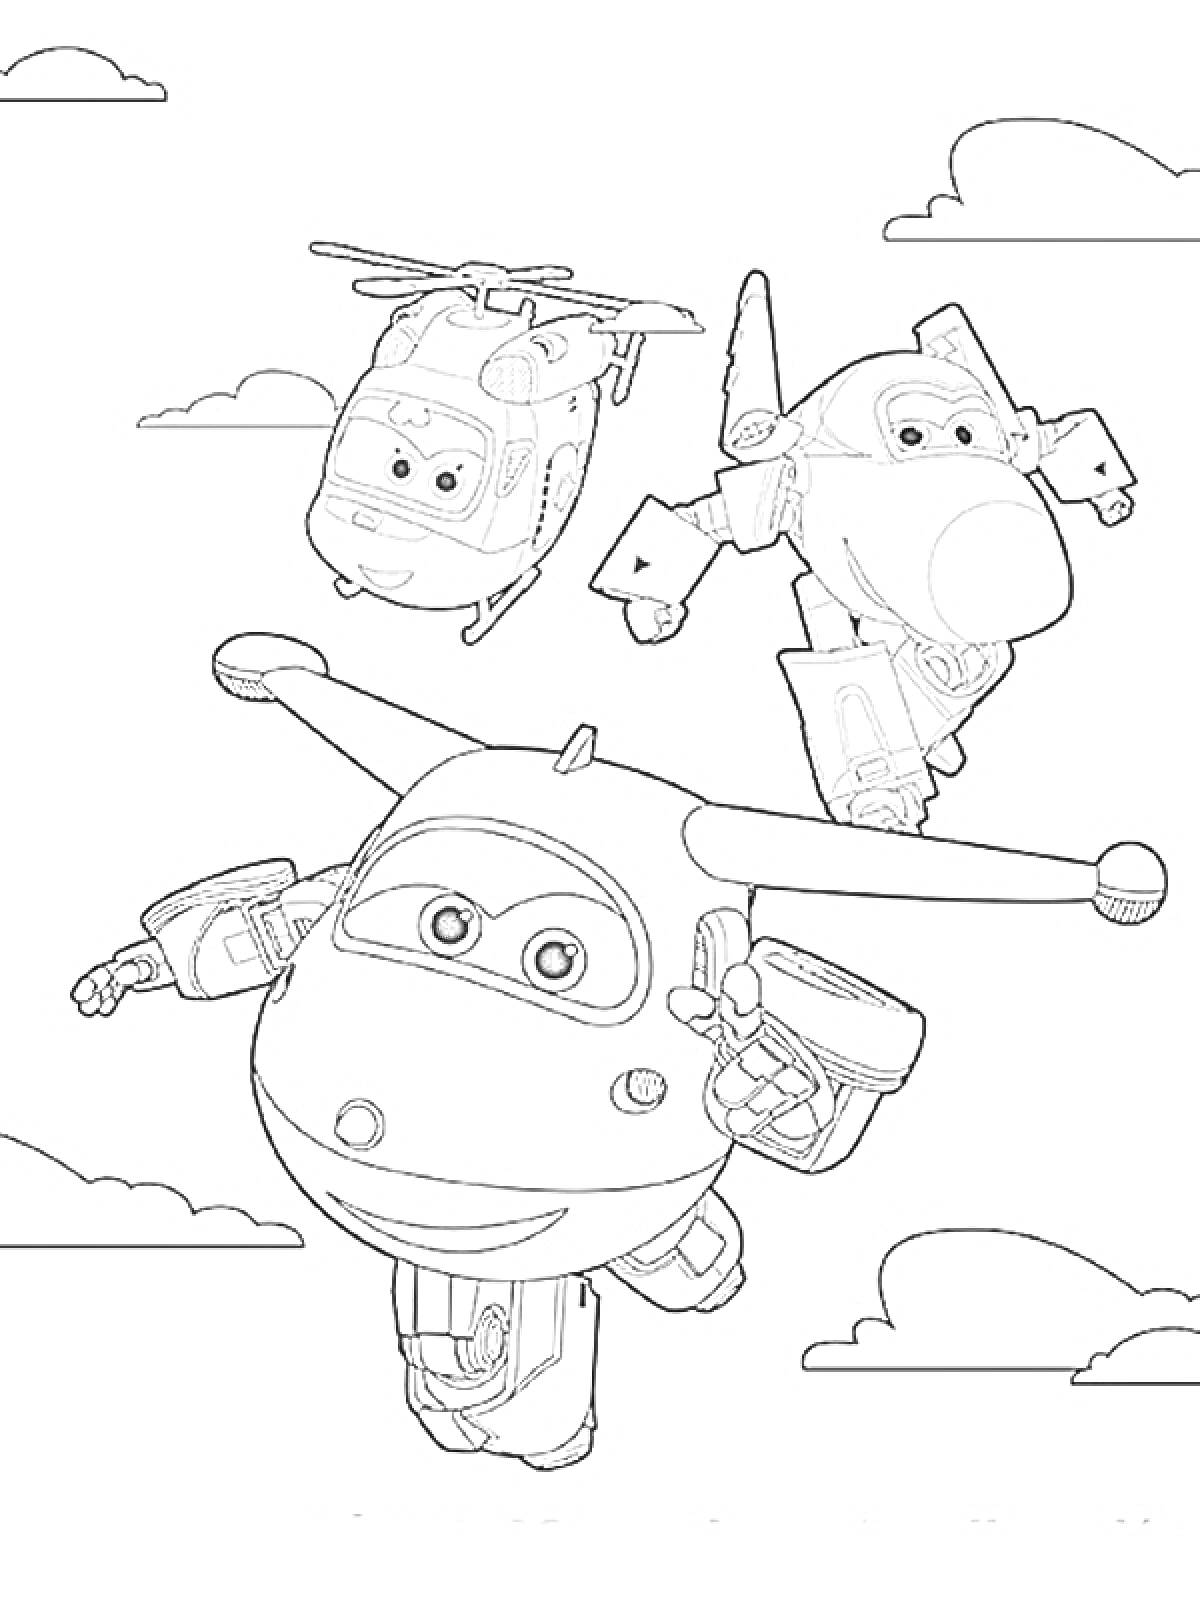 Раскраска Супер крылья - три персонажа: самолет, вертолет и истребитель, облака на заднем фоне